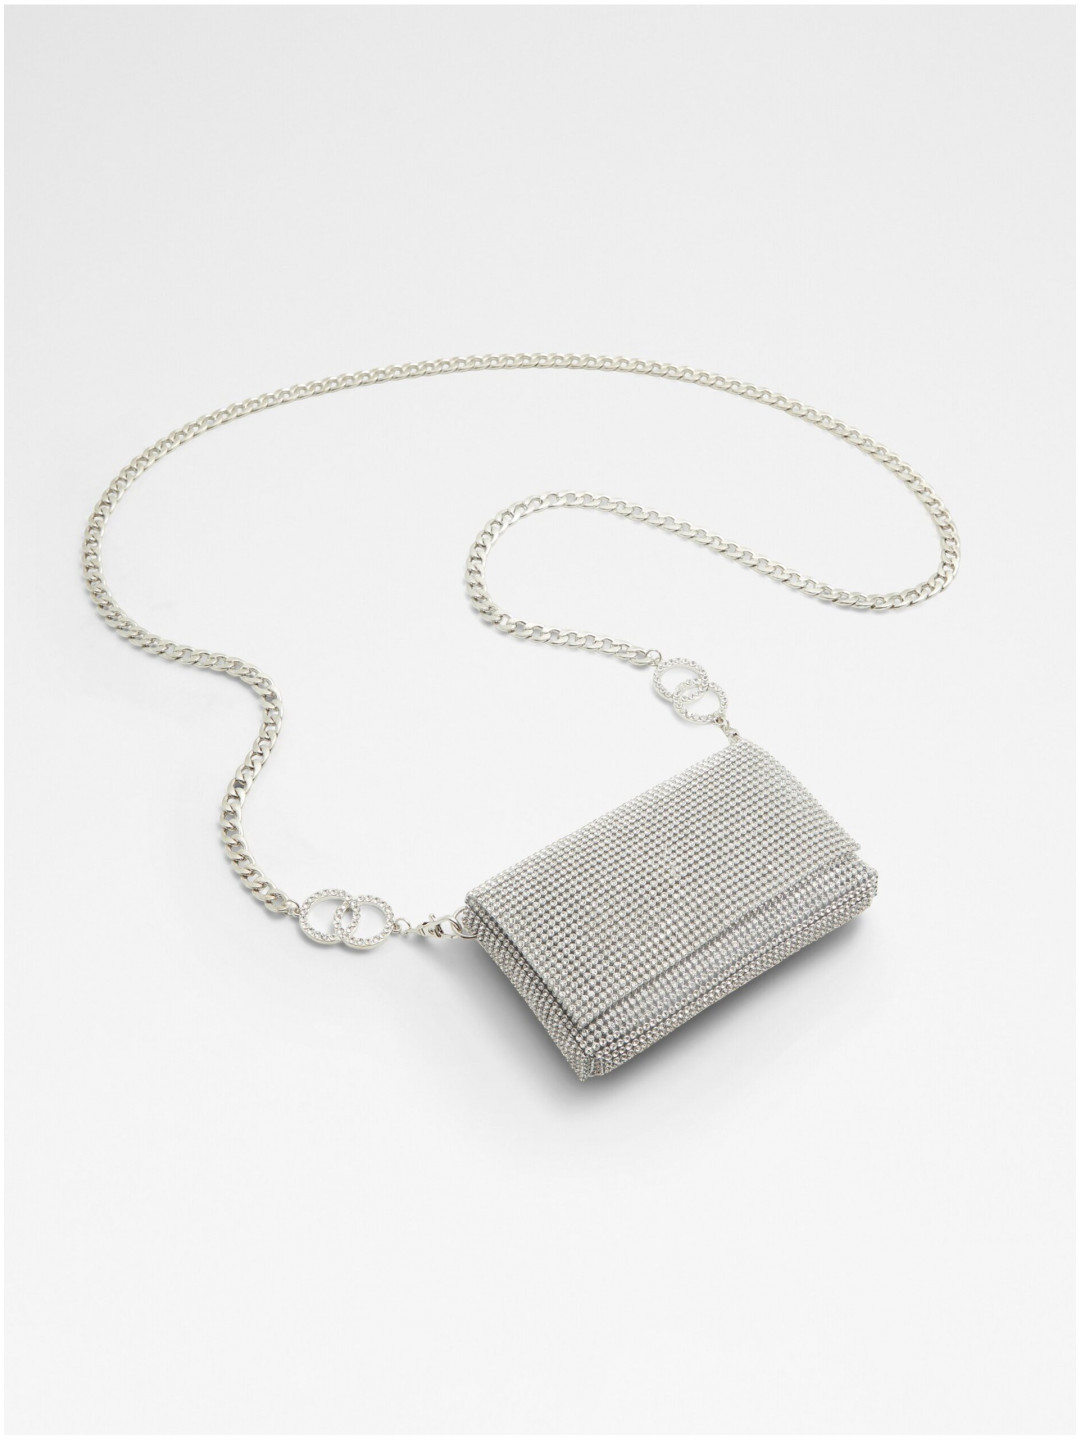 Dámská malá kabelka ve stříbrné barvě s ozdobnými kamínky ALDO Glitzies